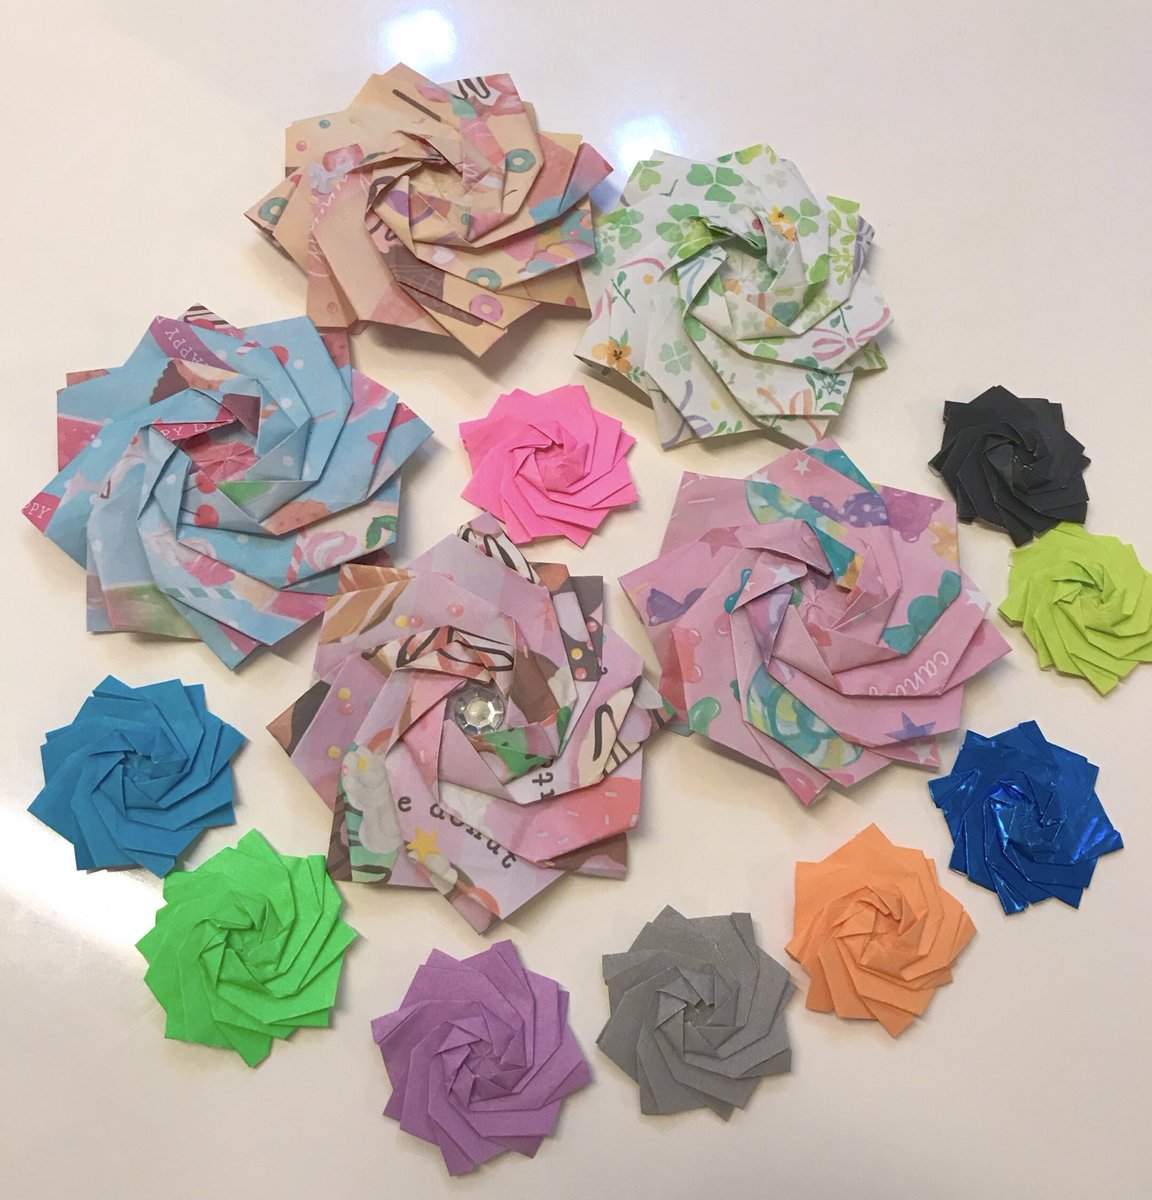 「小3次女の折り紙作品です薔薇の花折り方を次女に教えてもらいましたが結構むずかしか」|青い星のイラスト